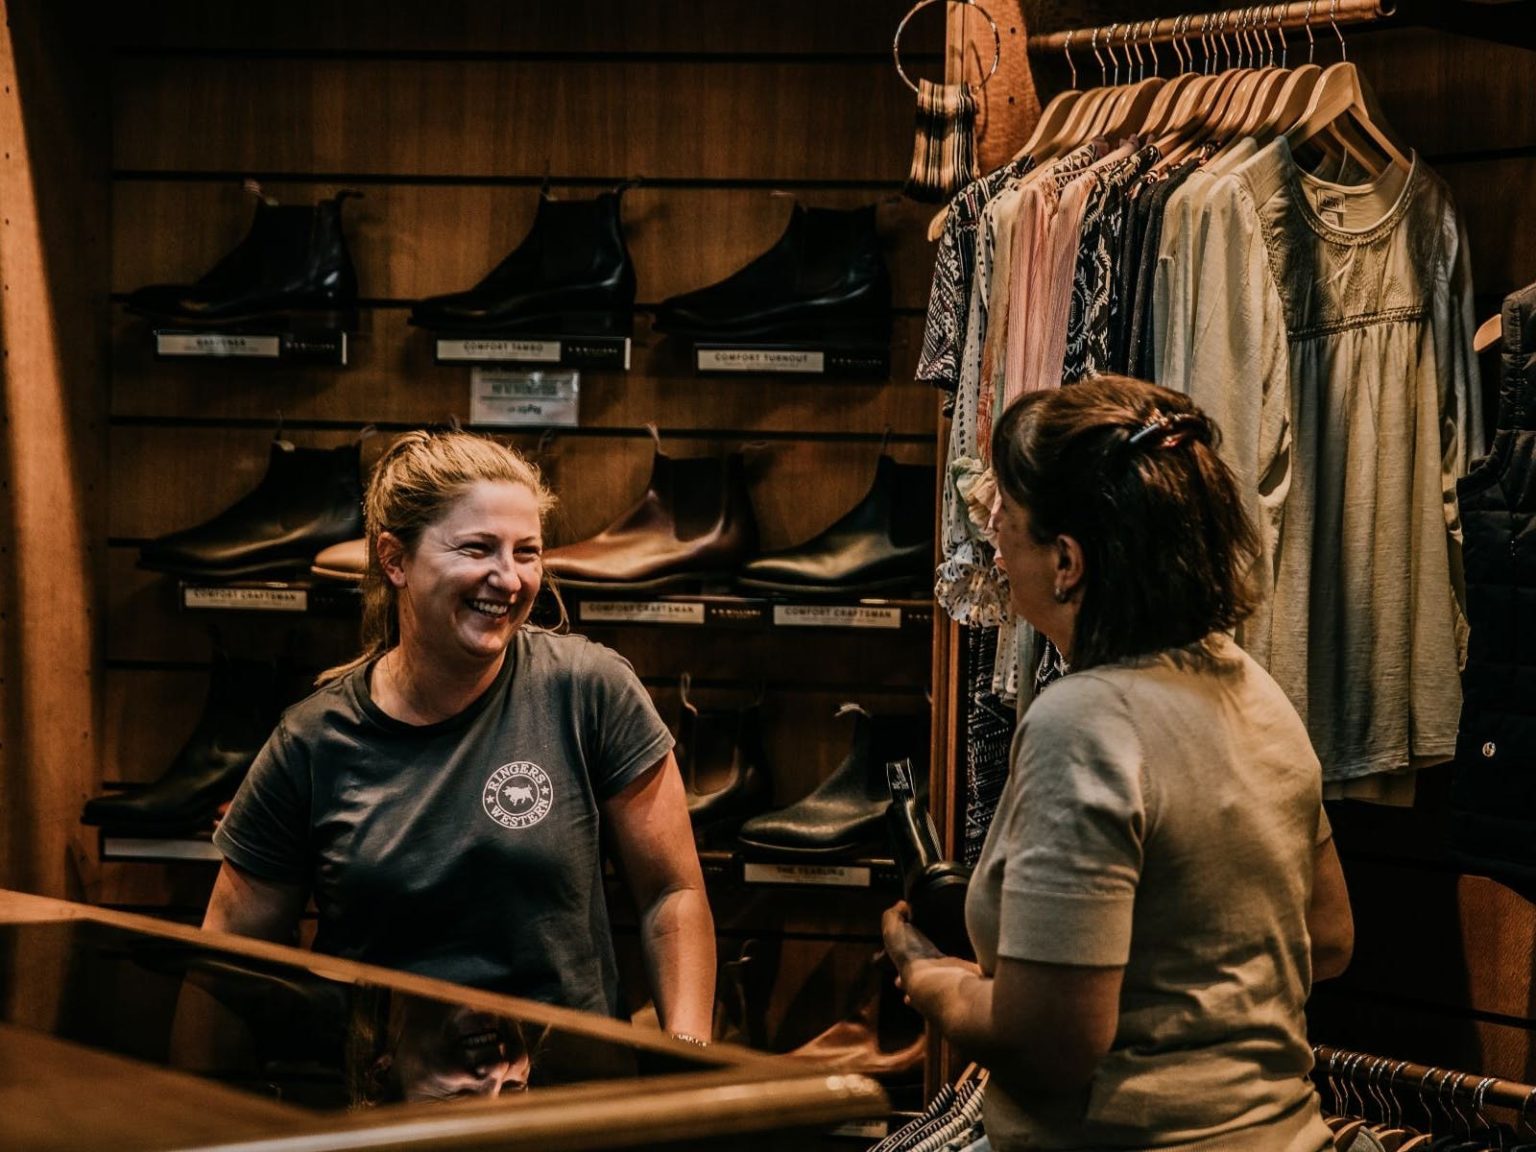 2 women talking in shop